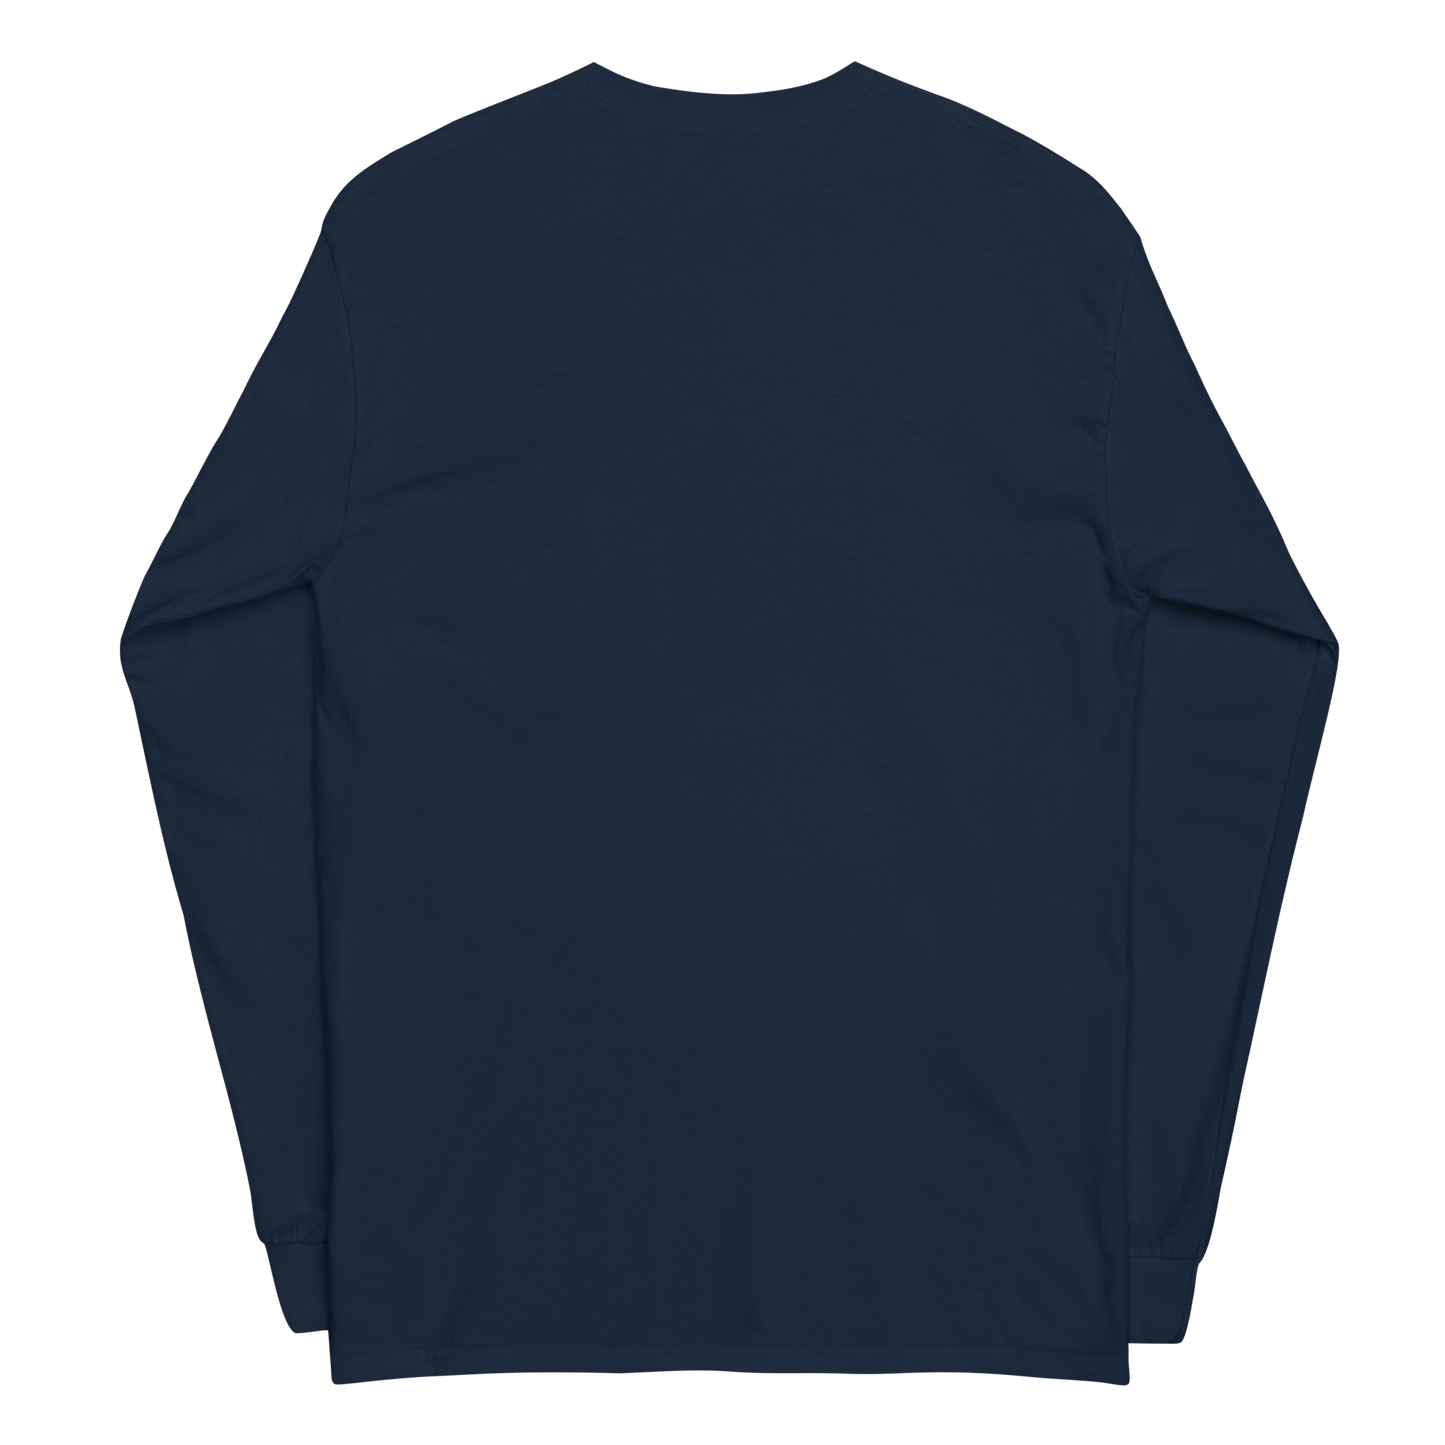 Camicia a maniche lunghe - Discreto V1.0 - Nero/Navy - Premium